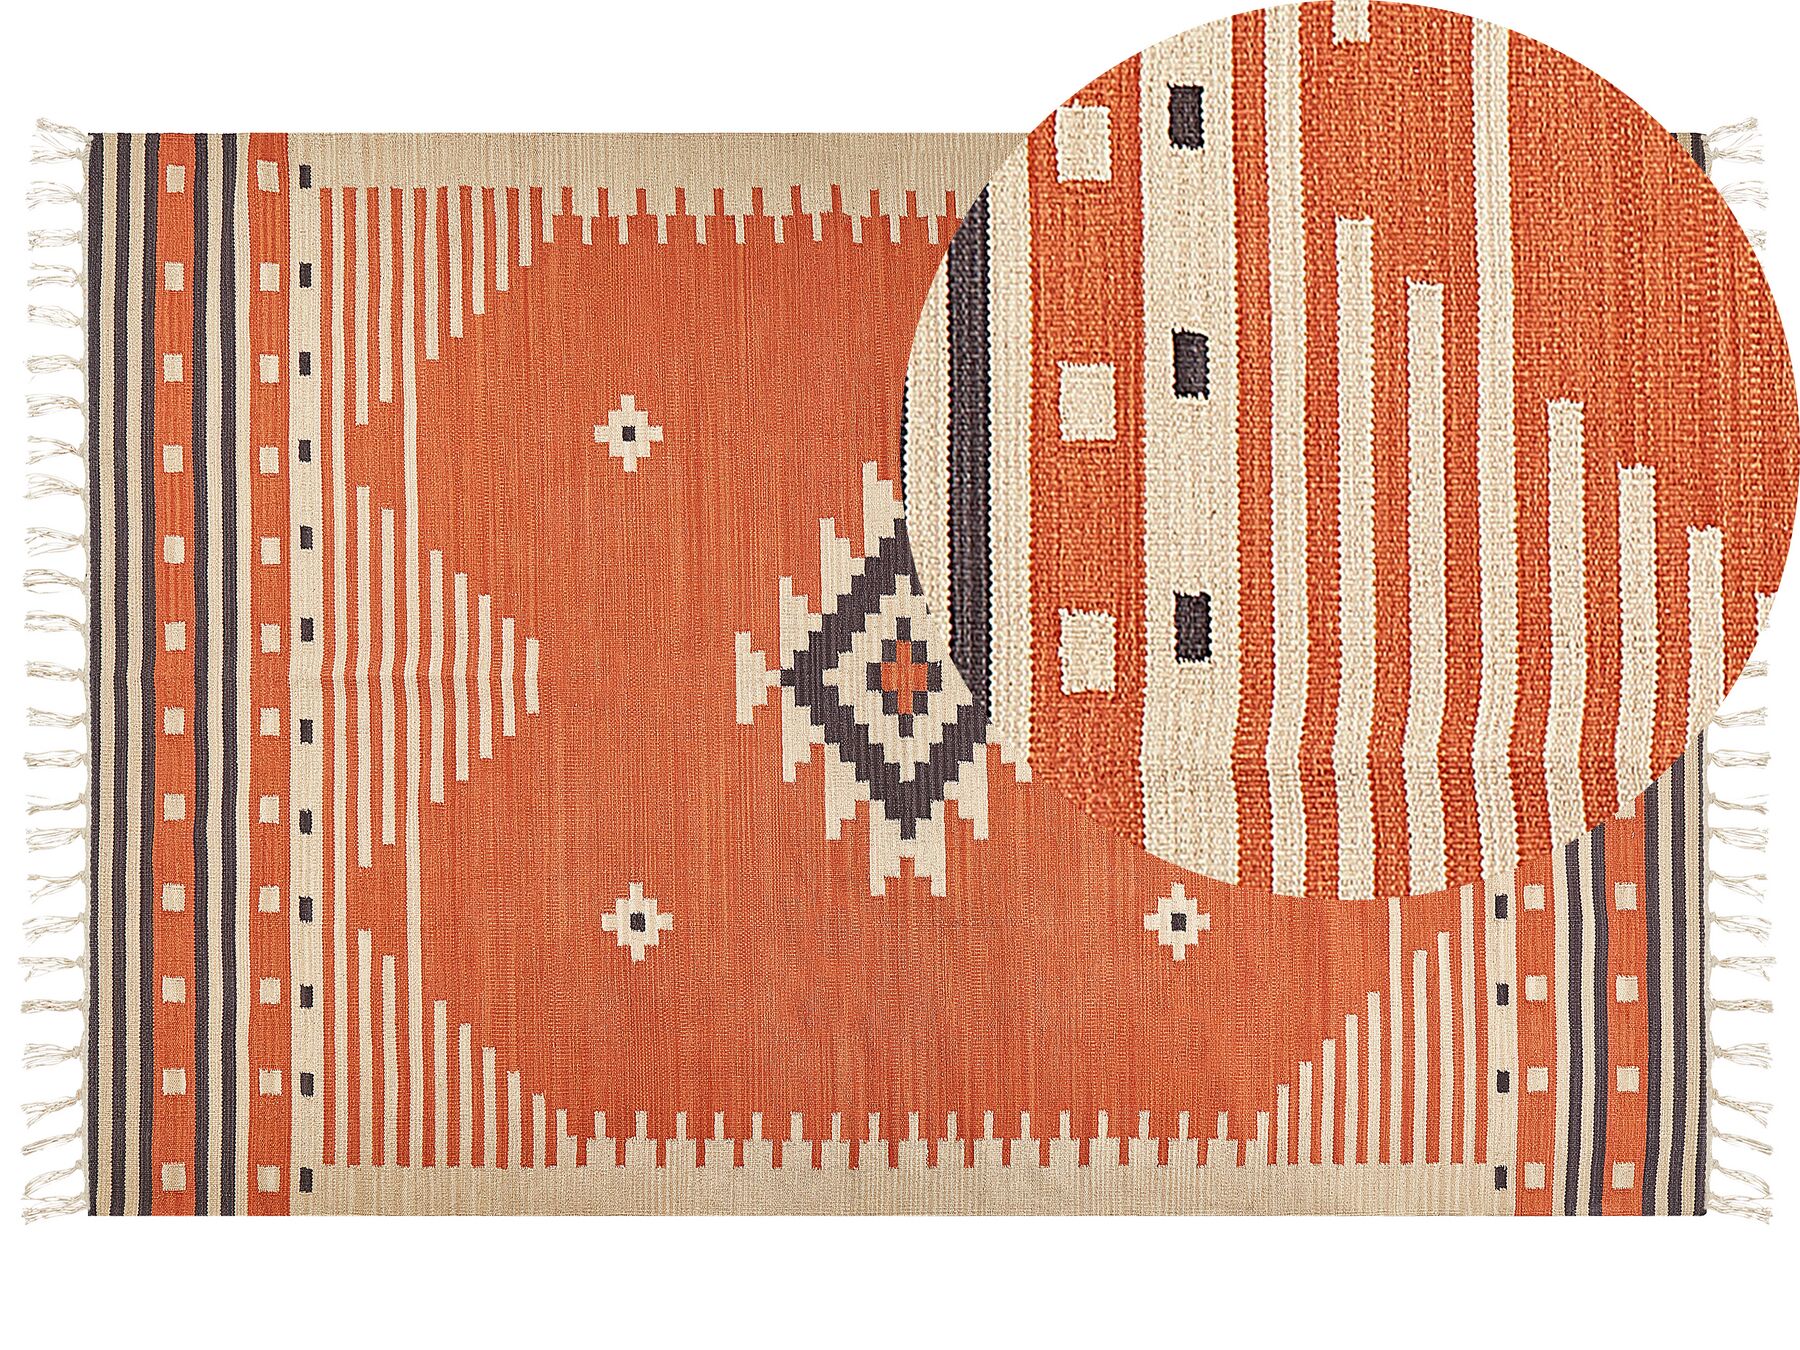 Bavlnený kelímový koberec 200 x 300 cm oranžový GAVAR_869221